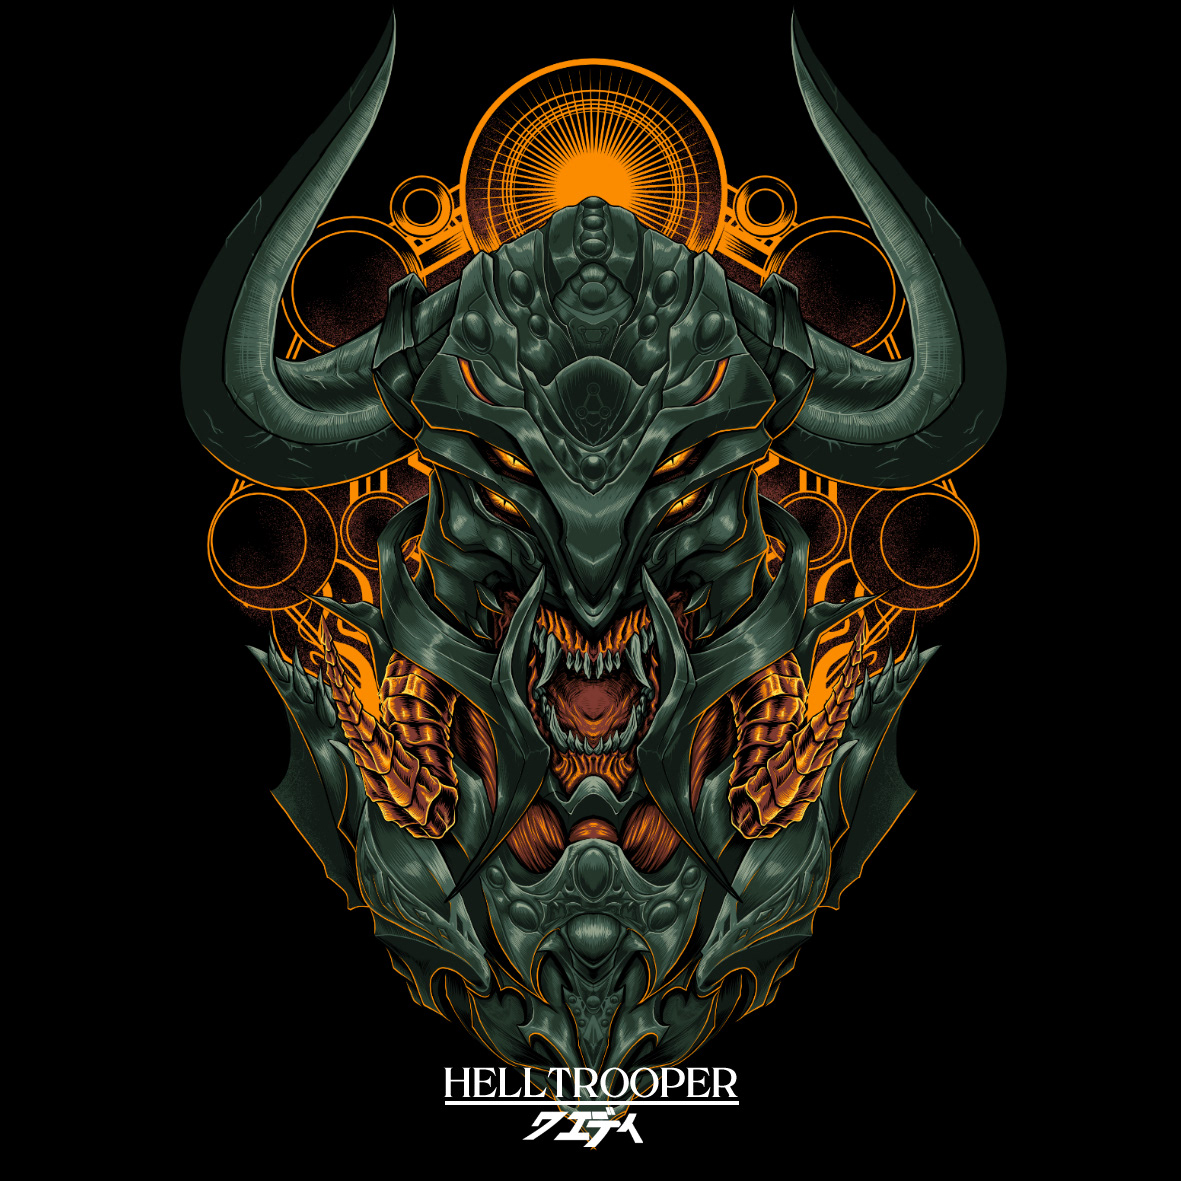 skul darkart artwork helltrooper dead dark evil